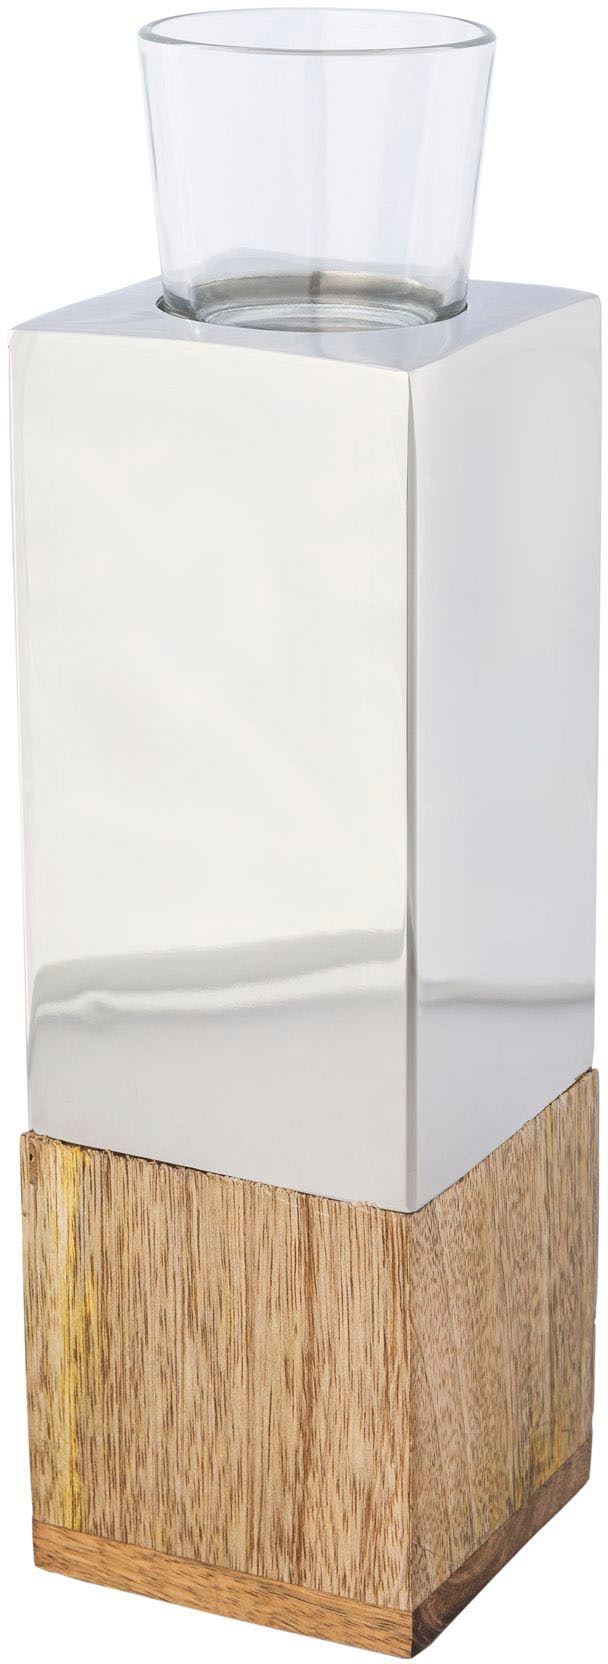 Creativ home Teelichthalter »Kerzenhalter Tower«, (1 St.), aus Holz, Edelstahl und Glas